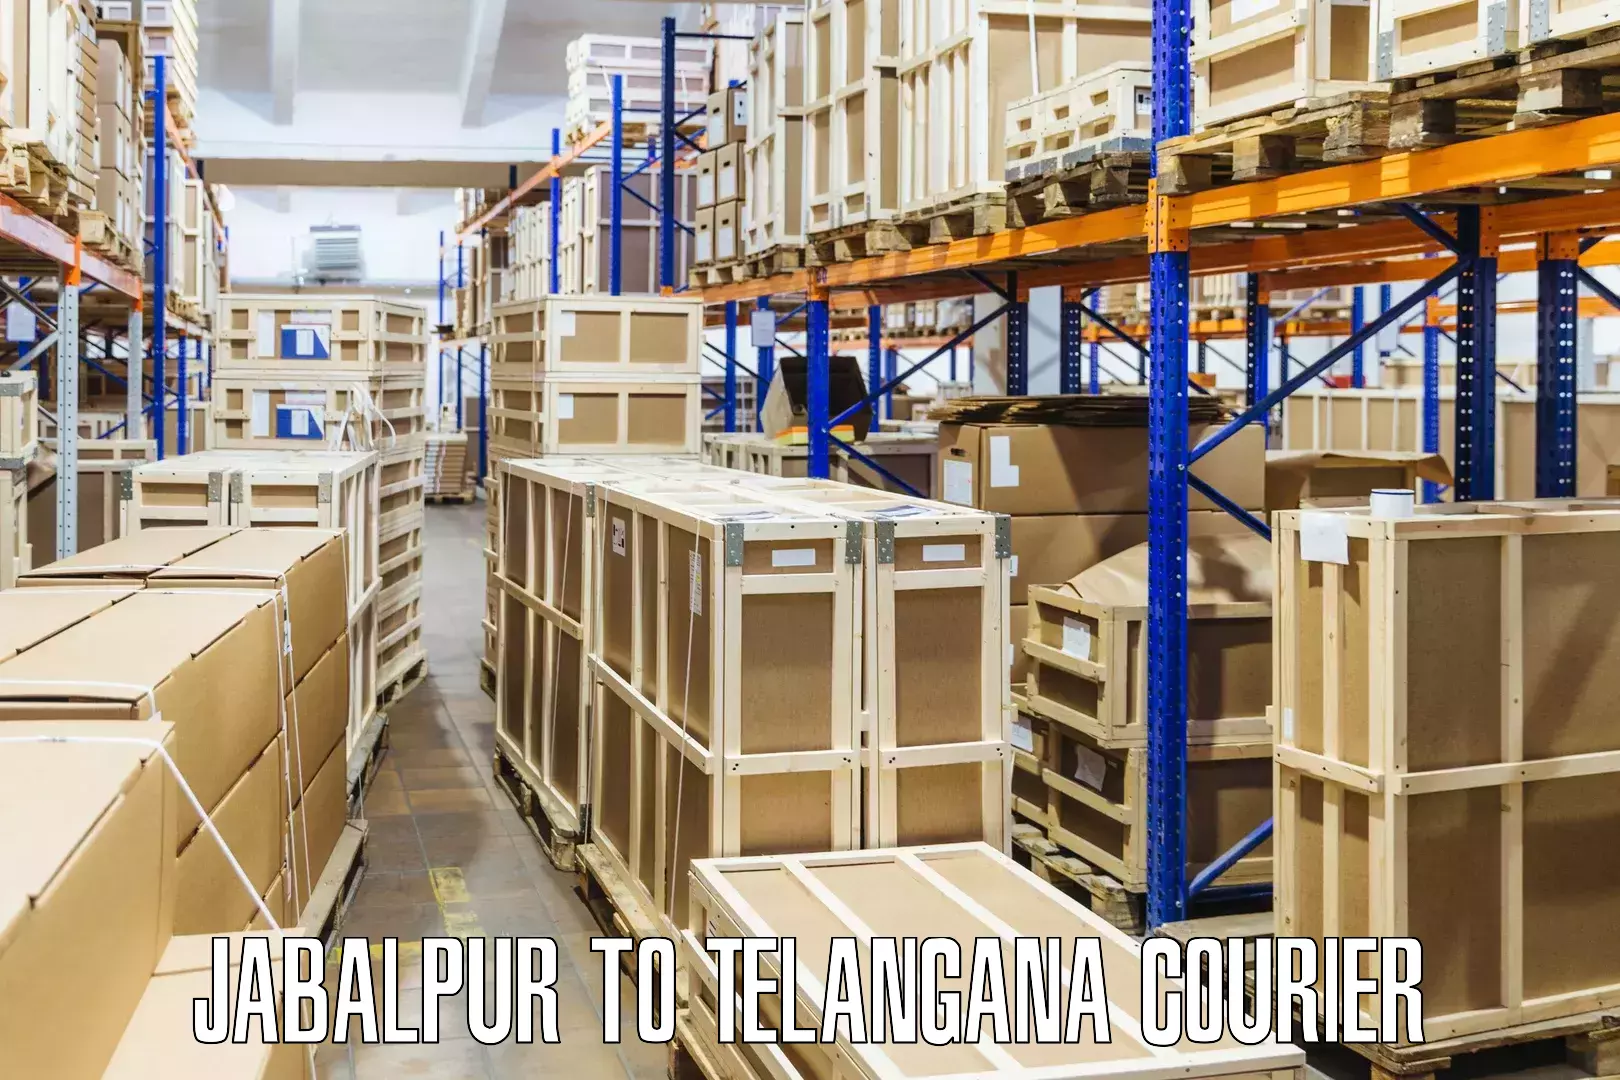 Wholesale parcel delivery Jabalpur to Mancherial